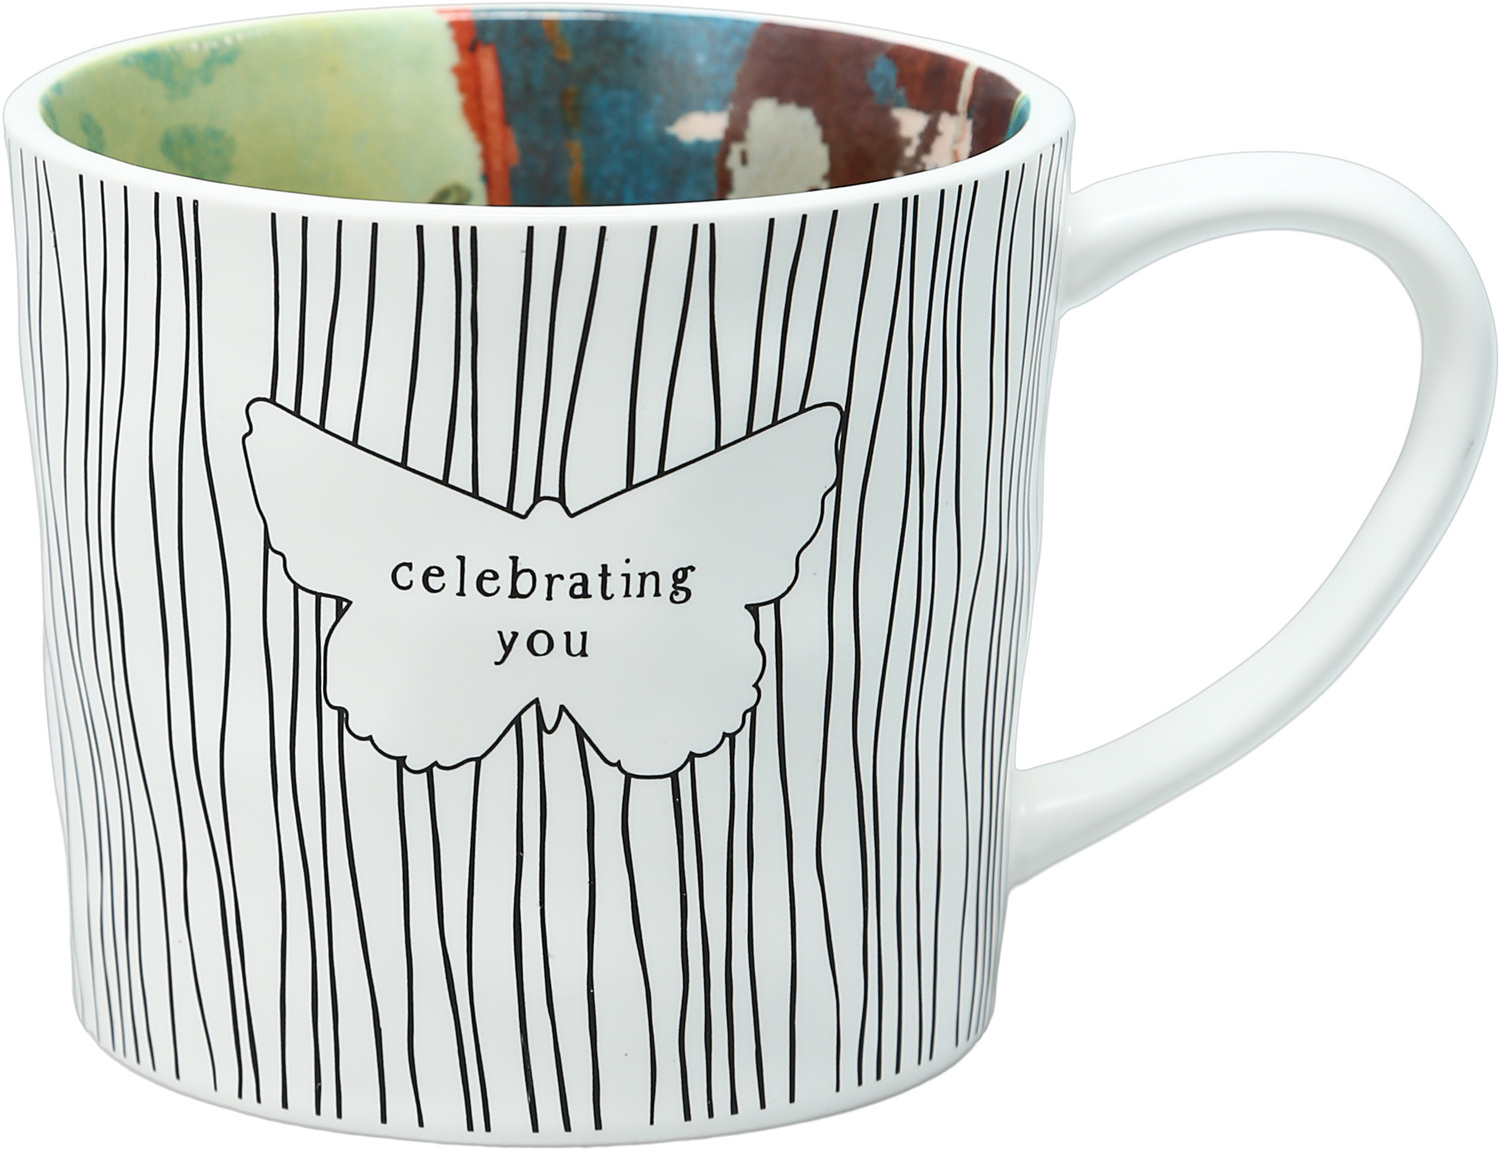 Celebrating You by Celebrating You - Celebrating You - 16 oz Mug